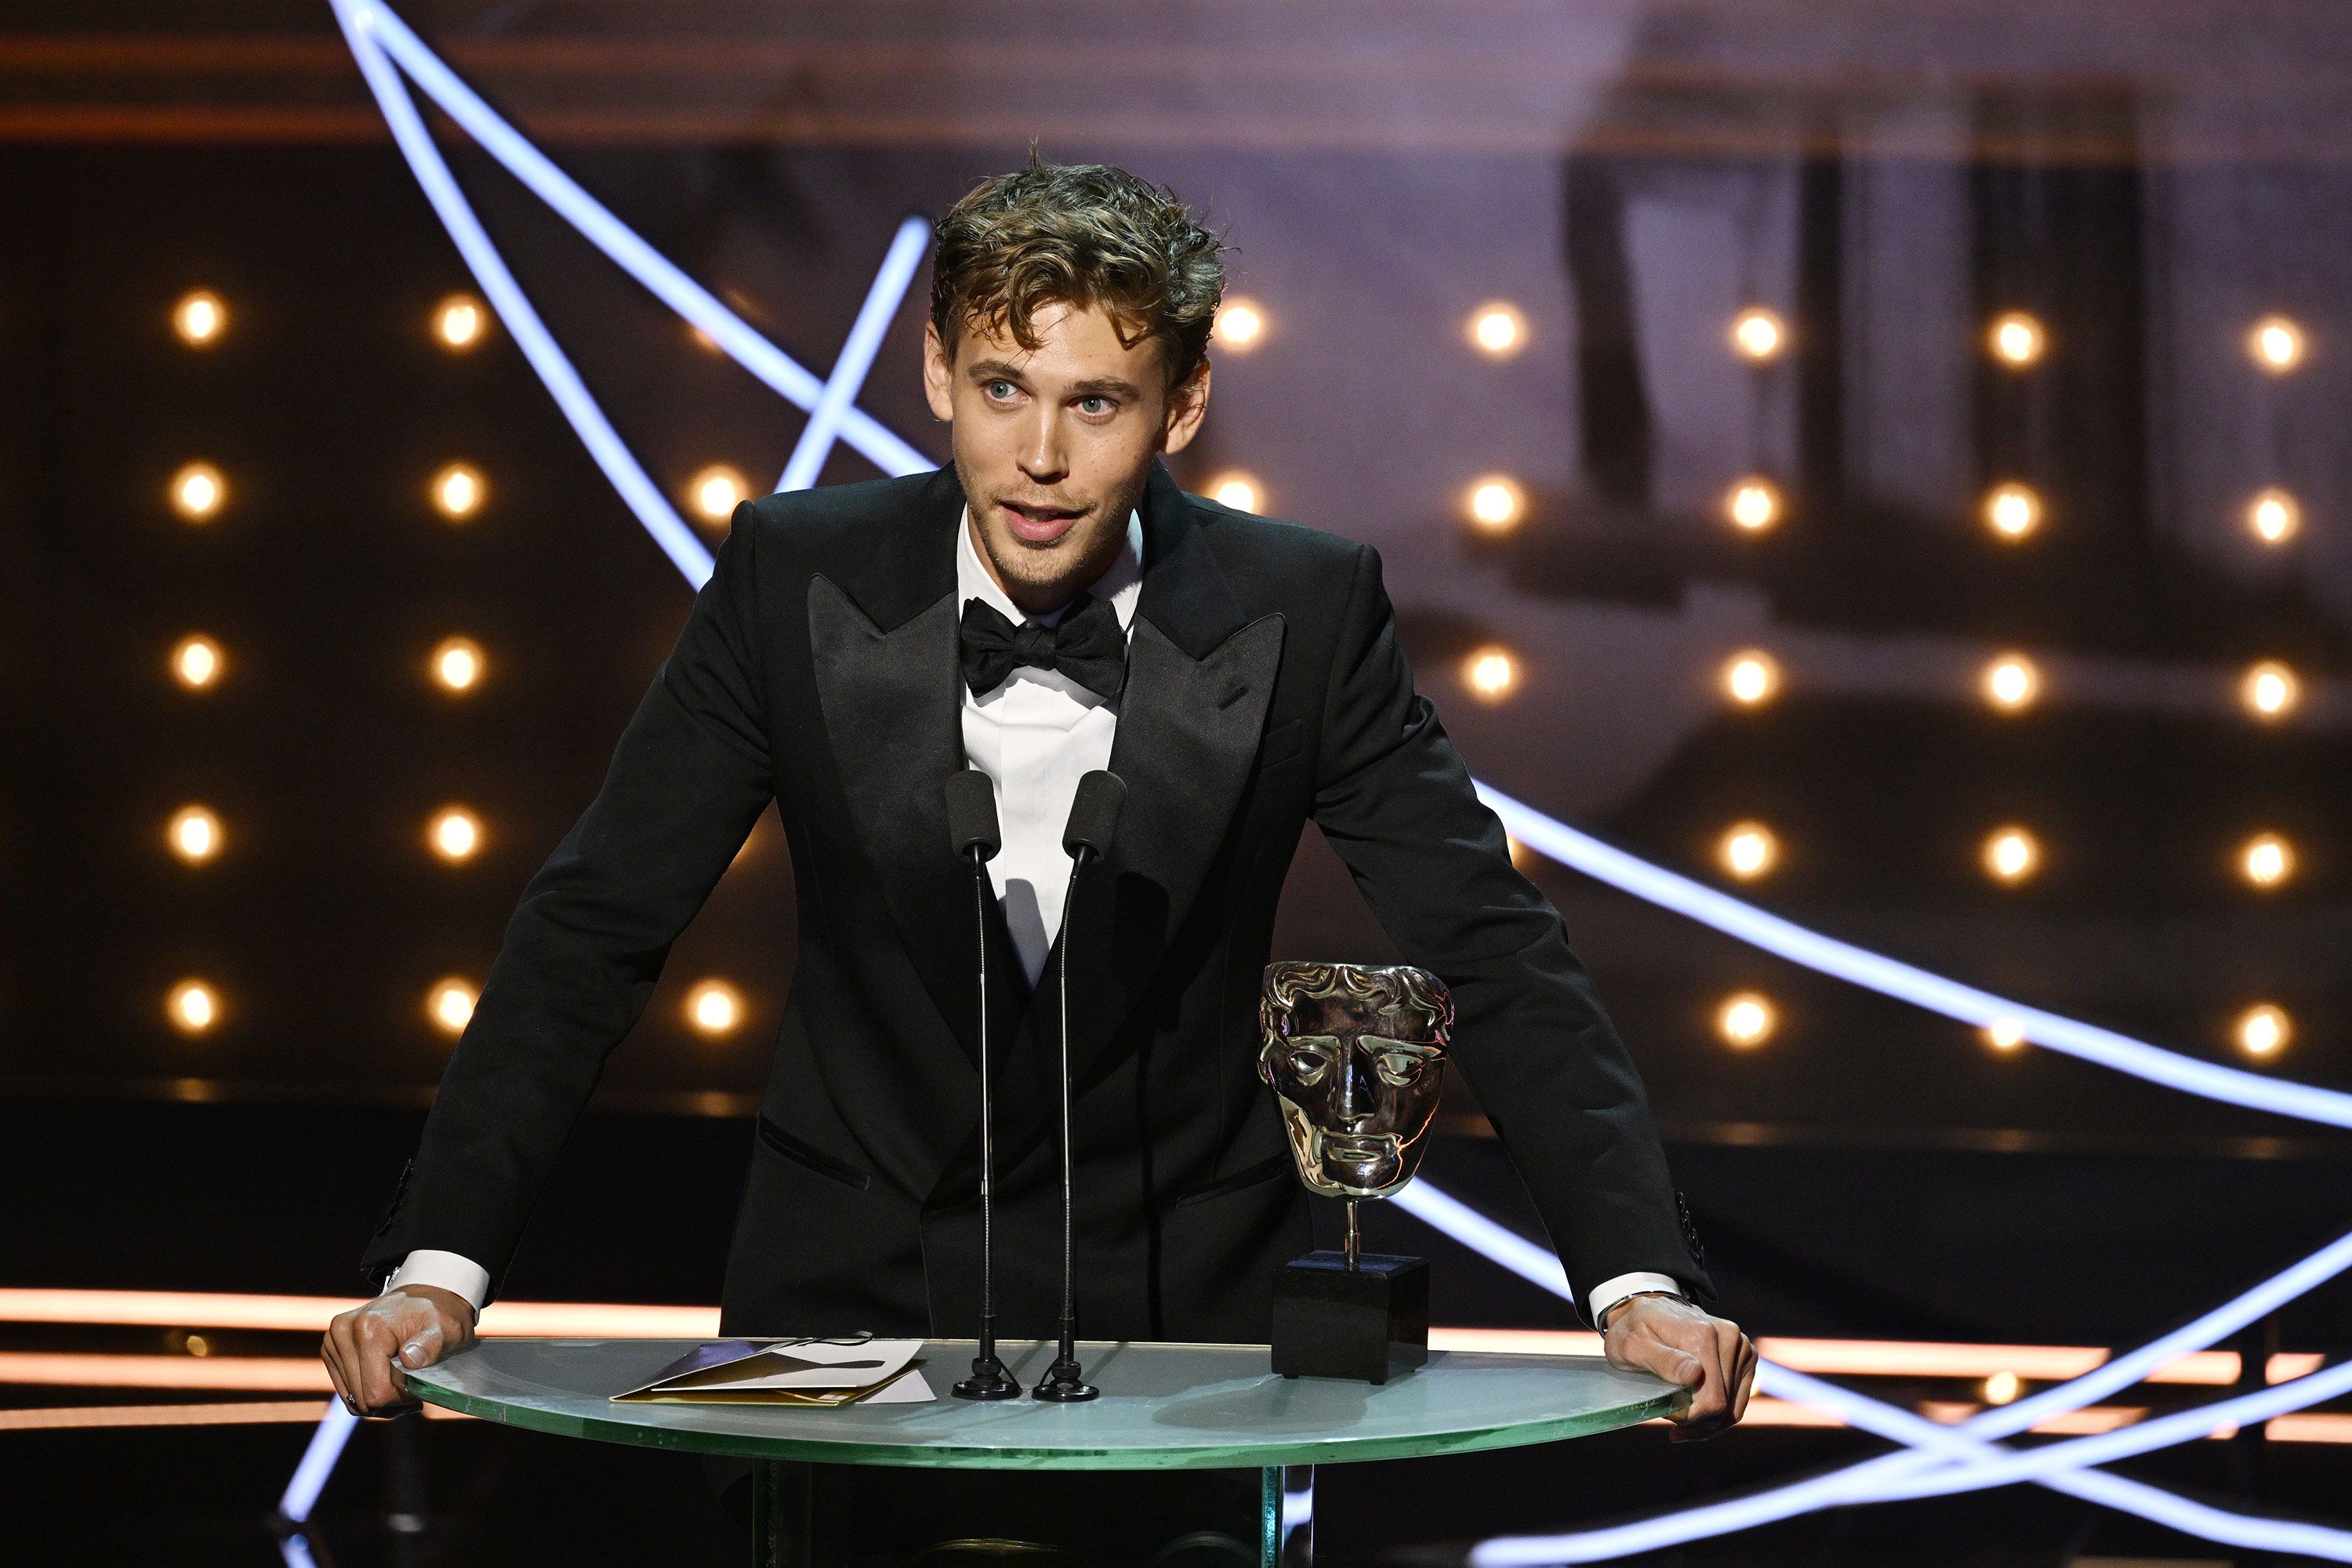 BAFTA Games Awards 2022: Confira a lista completa com todos os indicados -  CinePOP